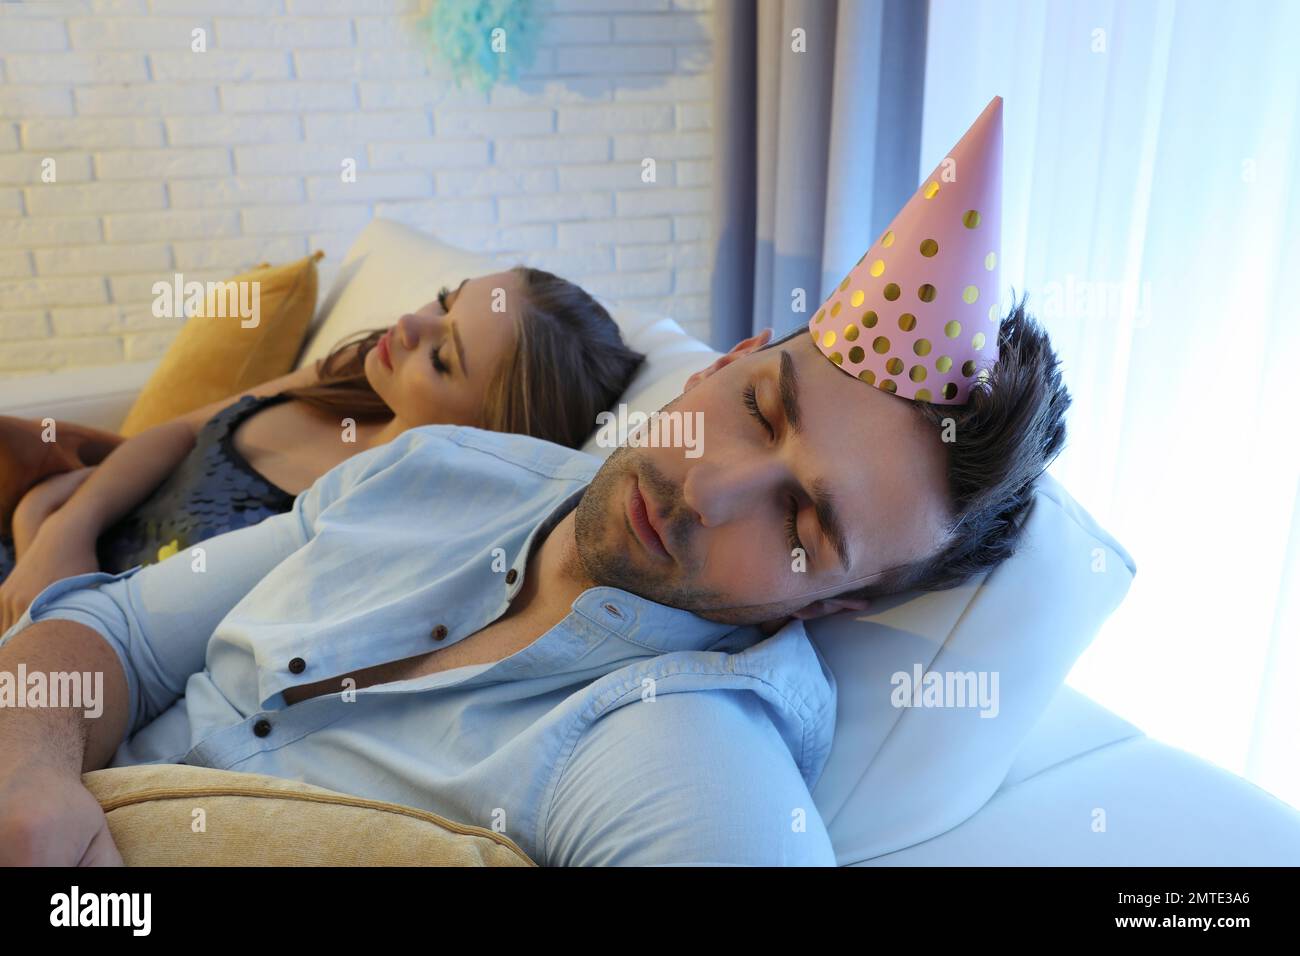 Dopo la festa, gli amici hanno bevuto sul divano della camera Foto Stock